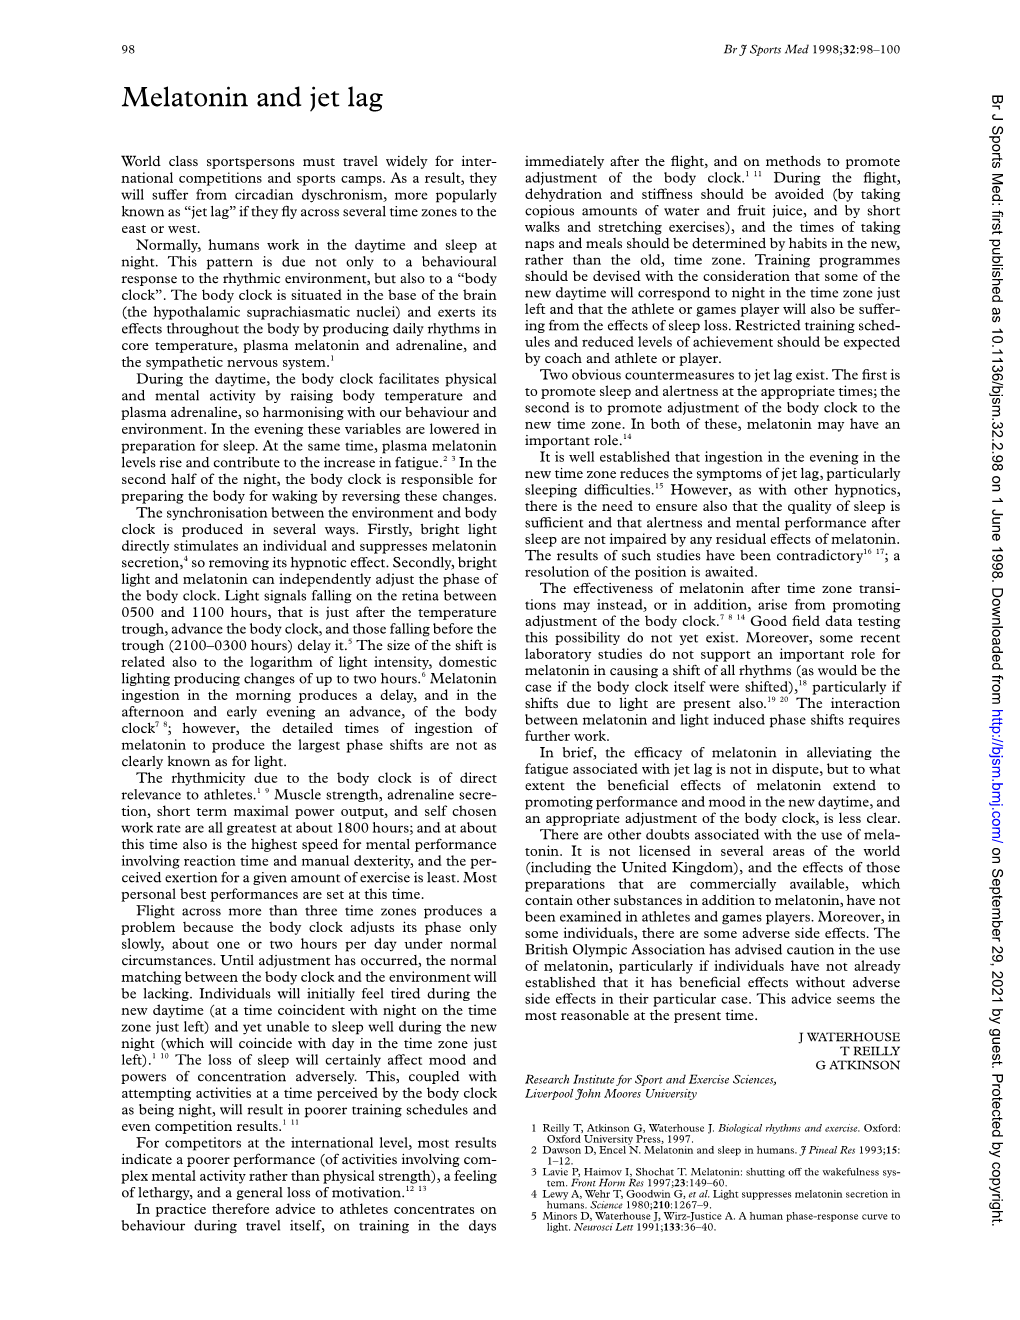 Melatonin and Jet Lag Br J Sports Med: First Published As 10.1136/Bjsm.32.2.98 on 1 June 1998